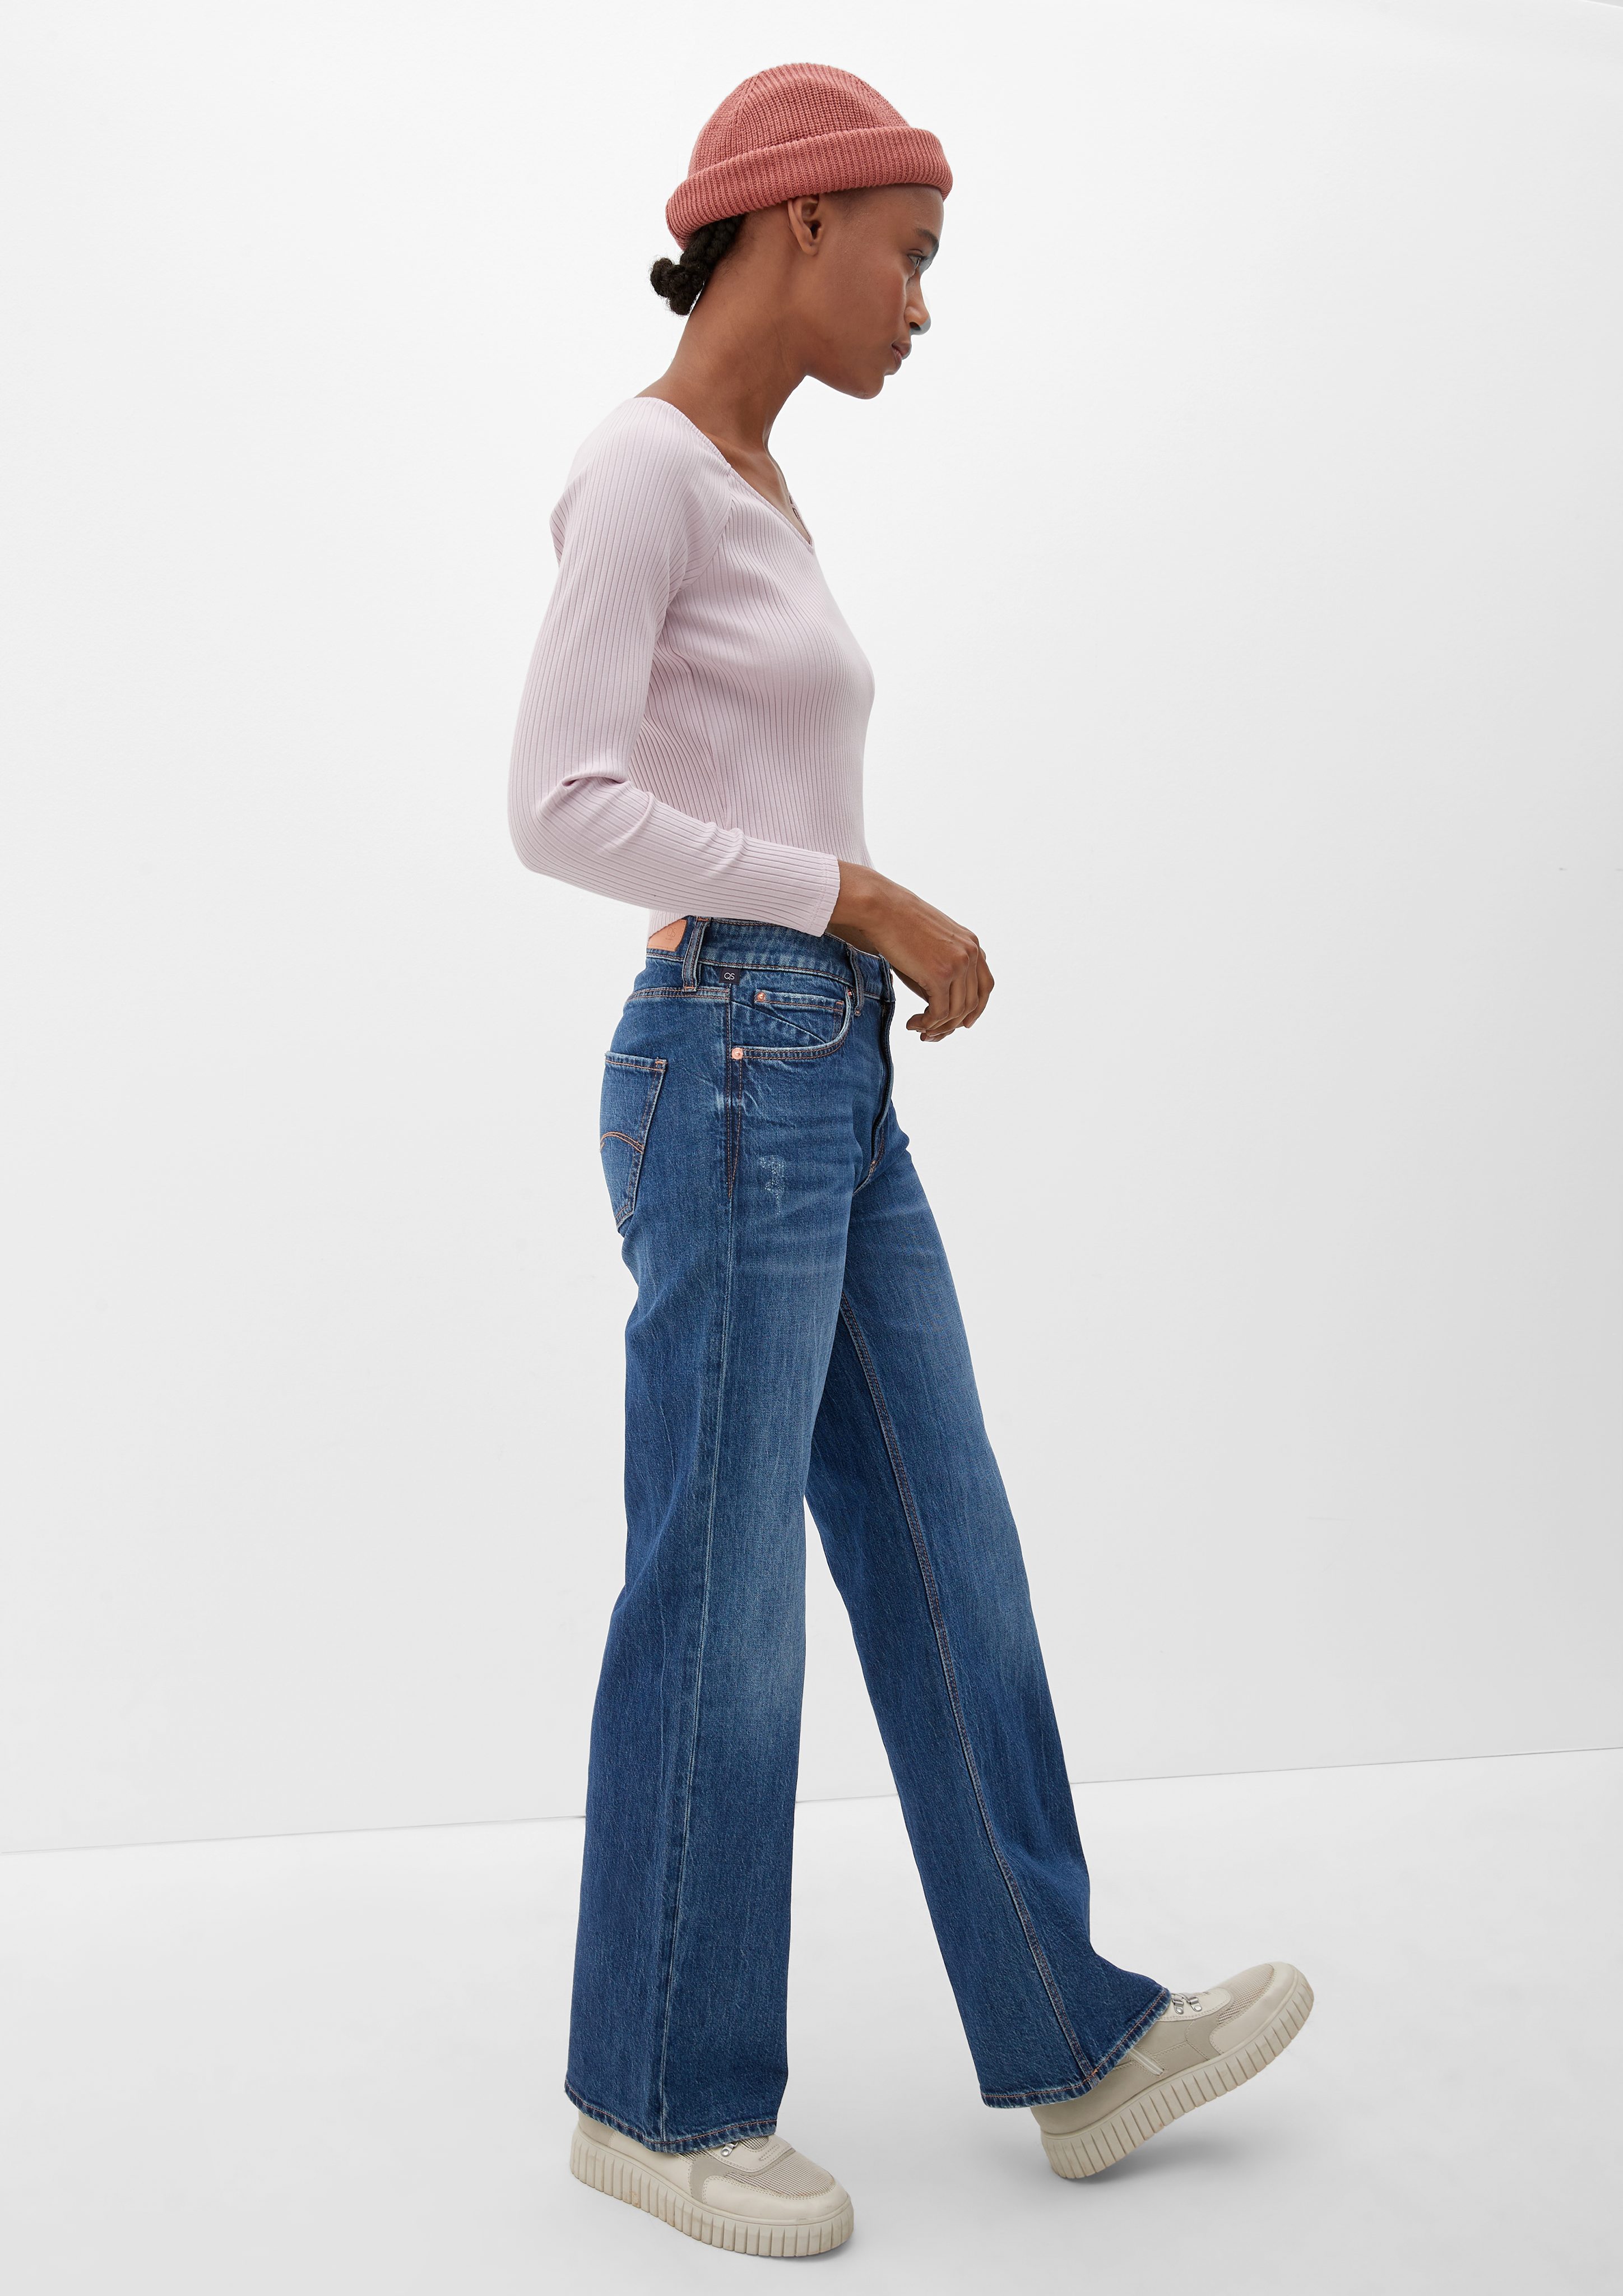 Knopfverschluss, Slim Rise der in hat Reißverschluss Leg Jeans / 5-Pocket-Form, / Waschung, Stoffhose Catie einen QS / Fit ist Wide verdeckt High